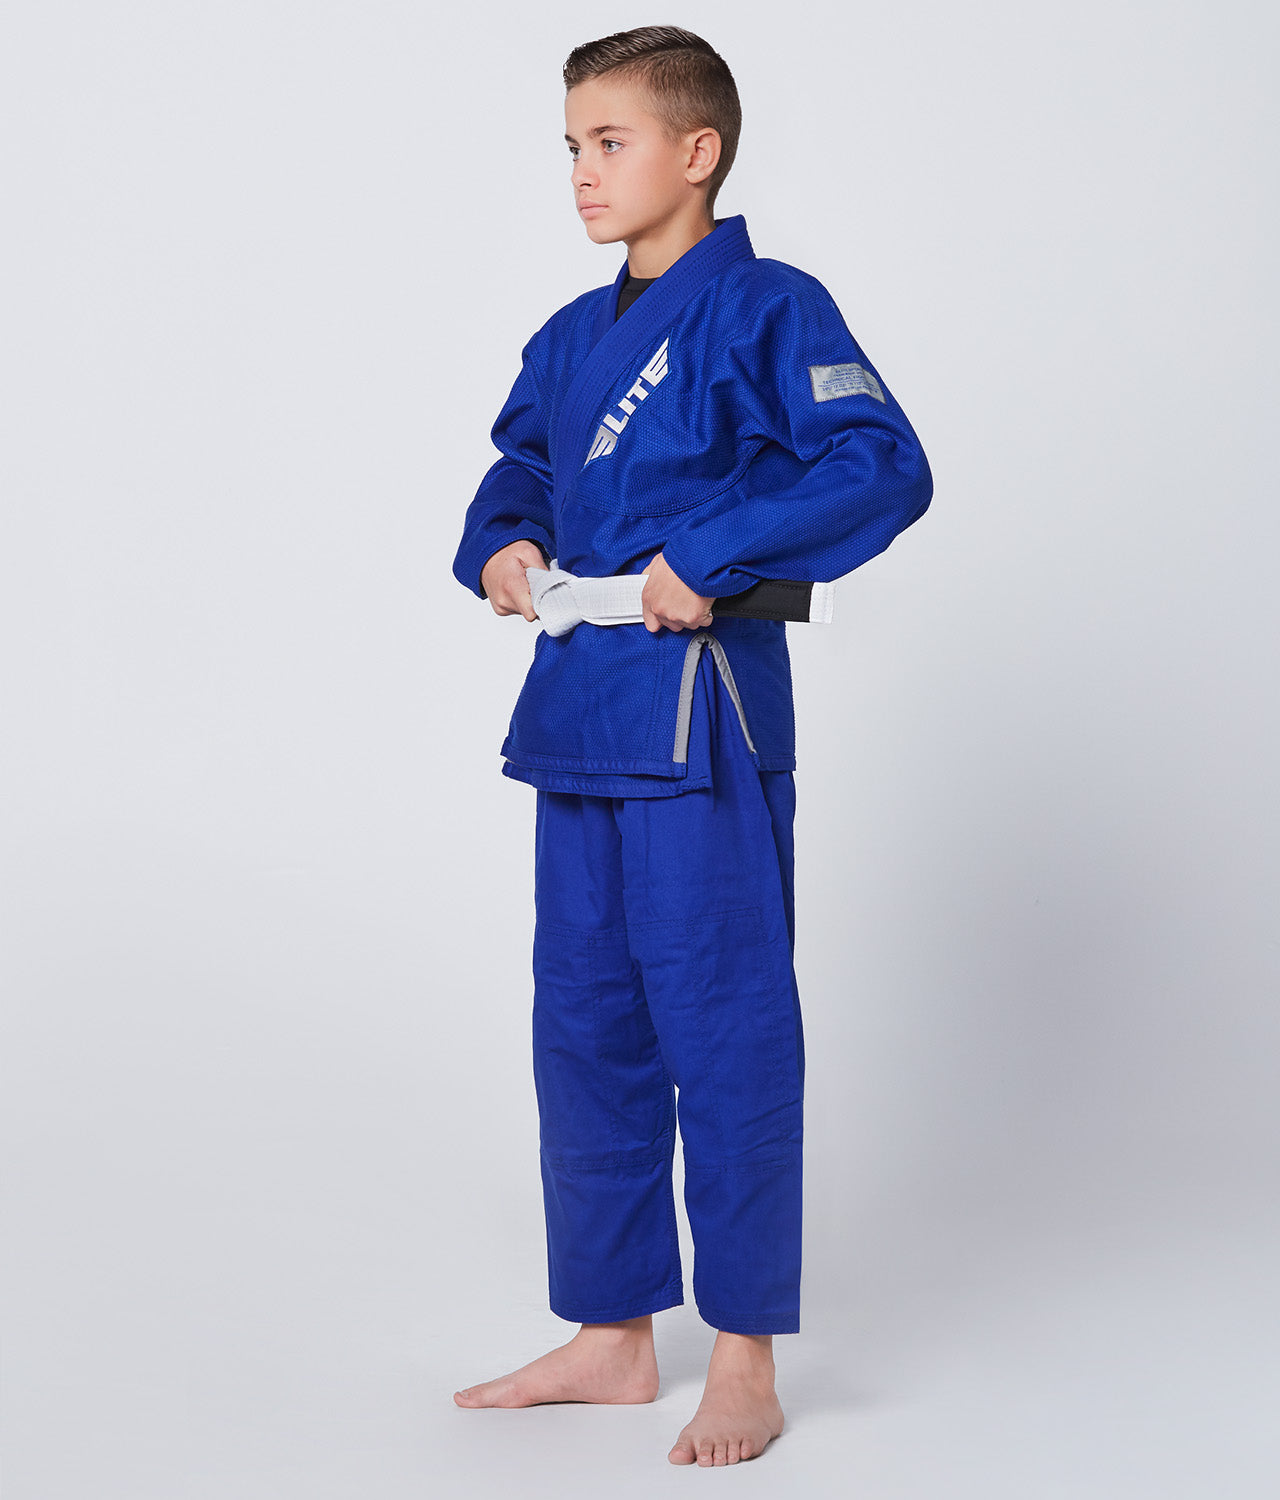 Elite Sports Kids' Core Blue Brazilian Jiu Jitsu BJJ Gi Side View